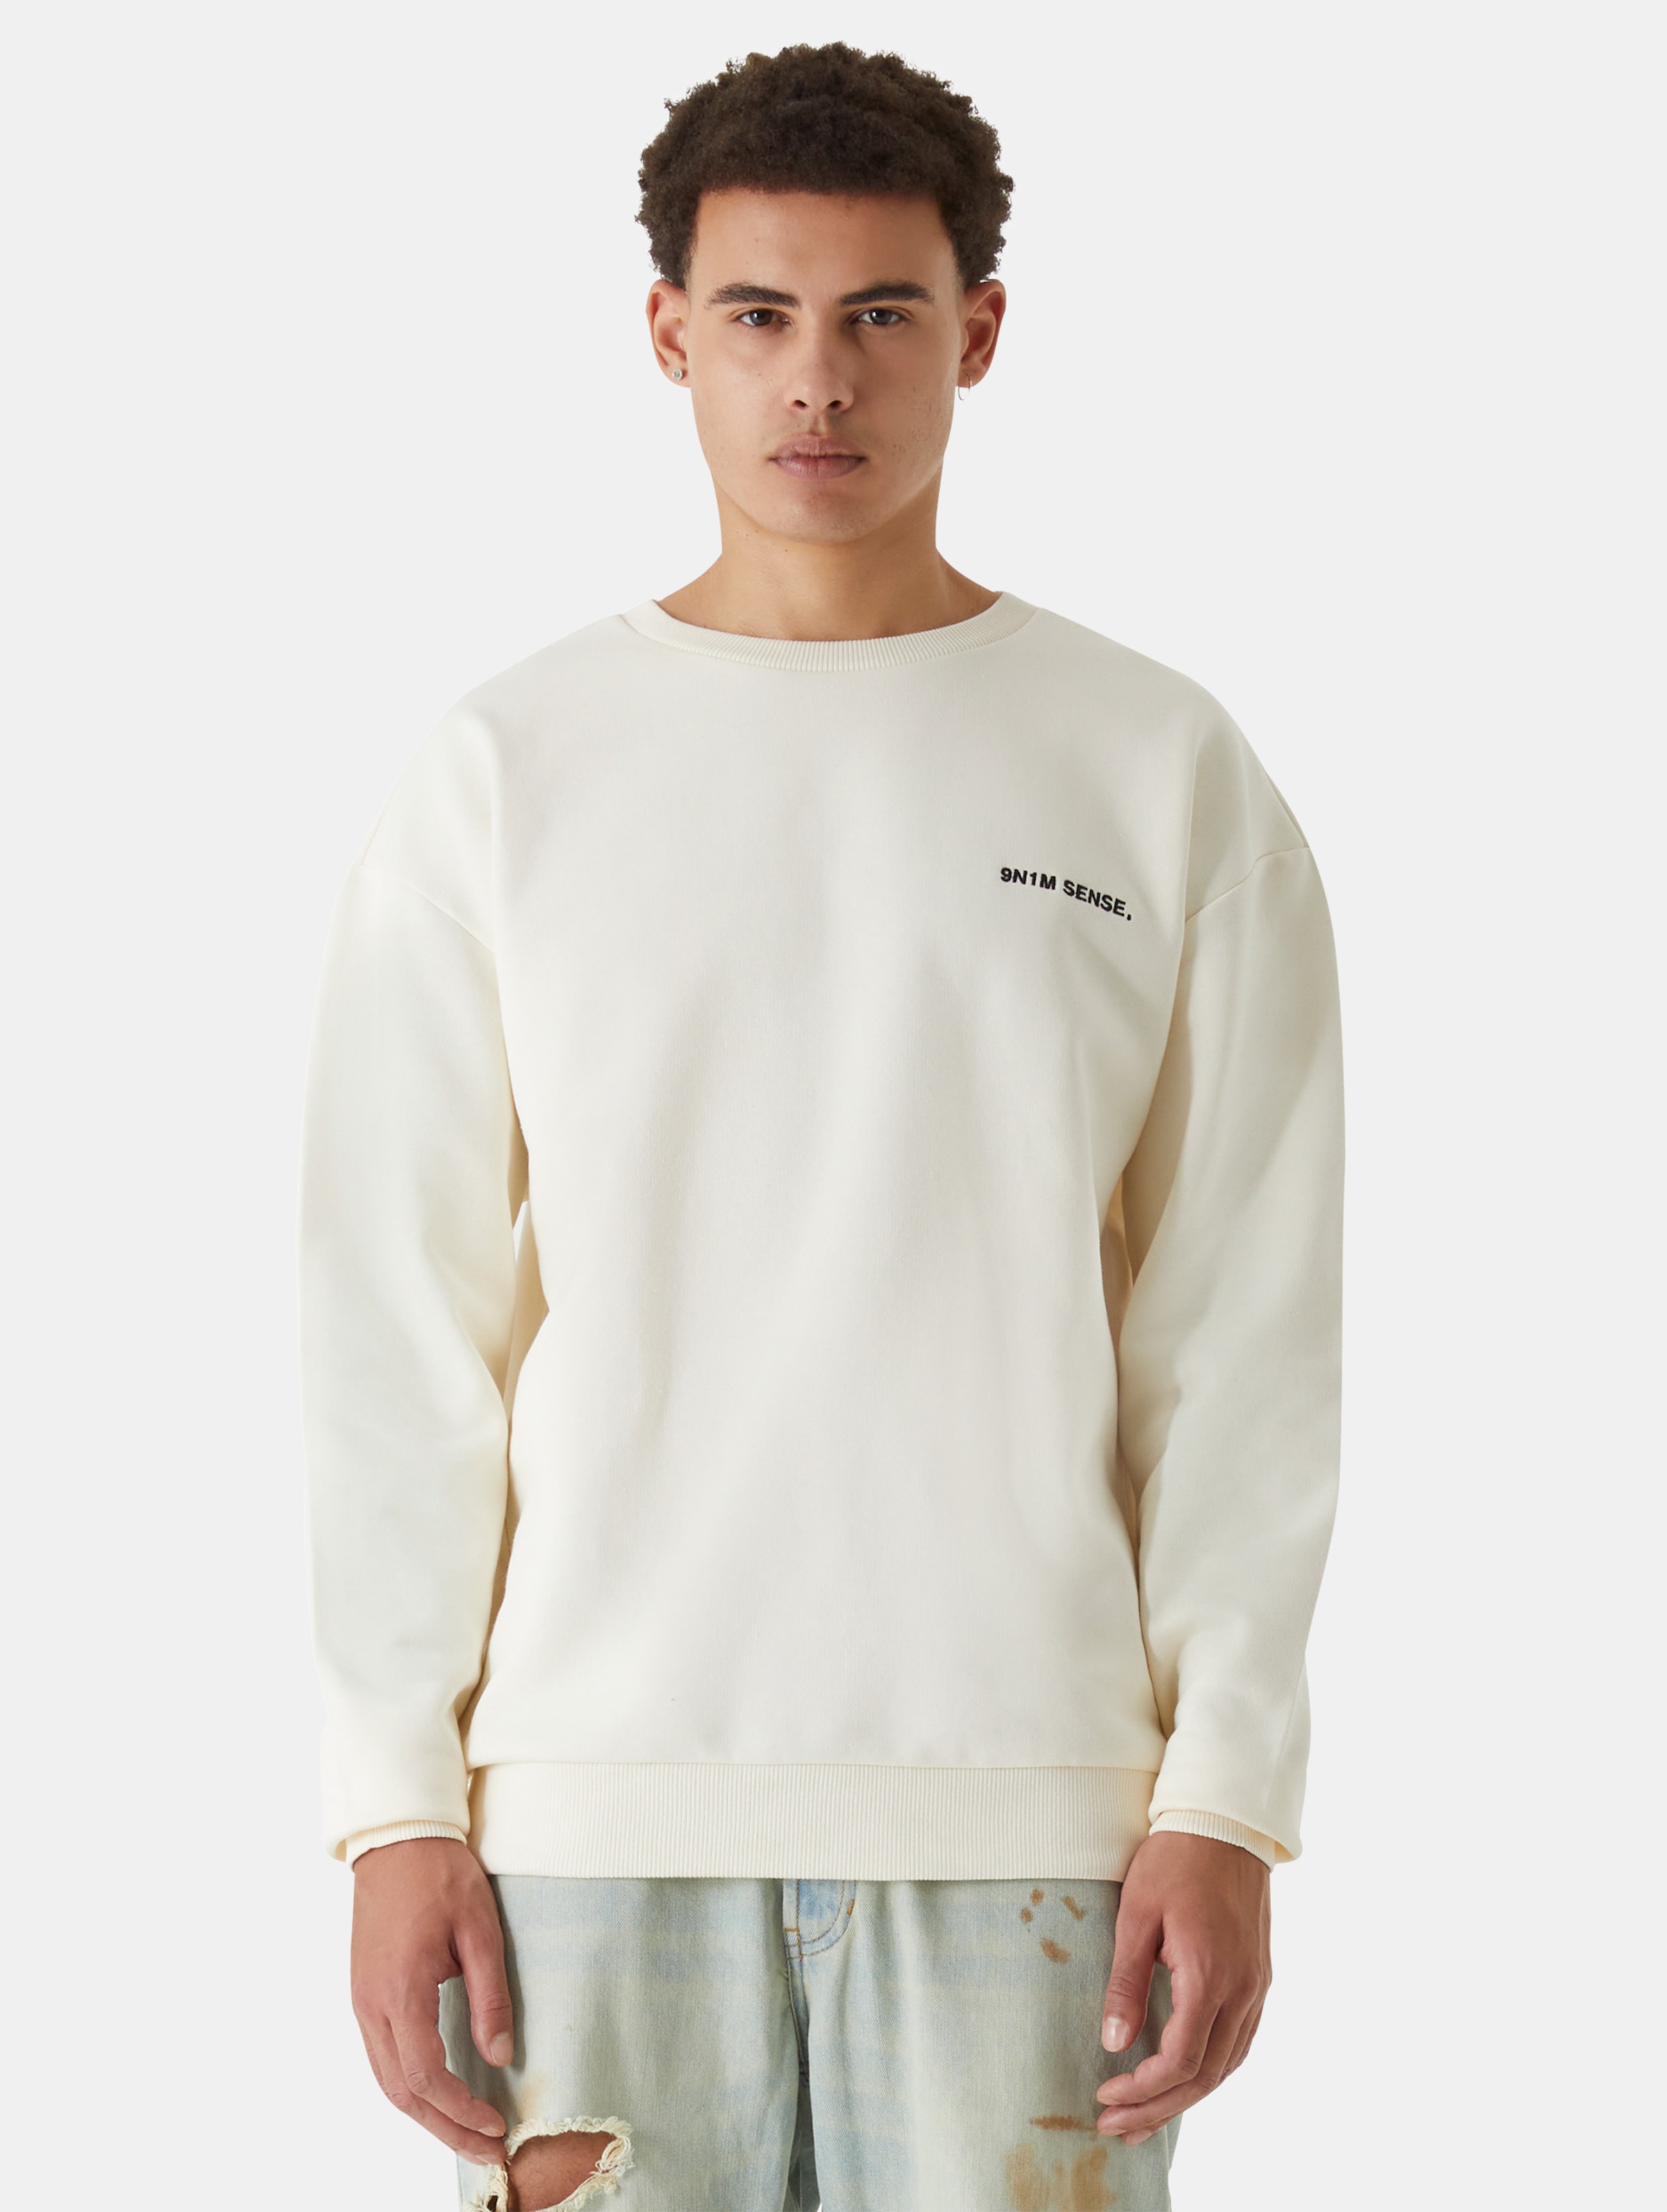 9N1M SENSE Essential Sweatshirt Männer,Unisex op kleur beige, Maat XL